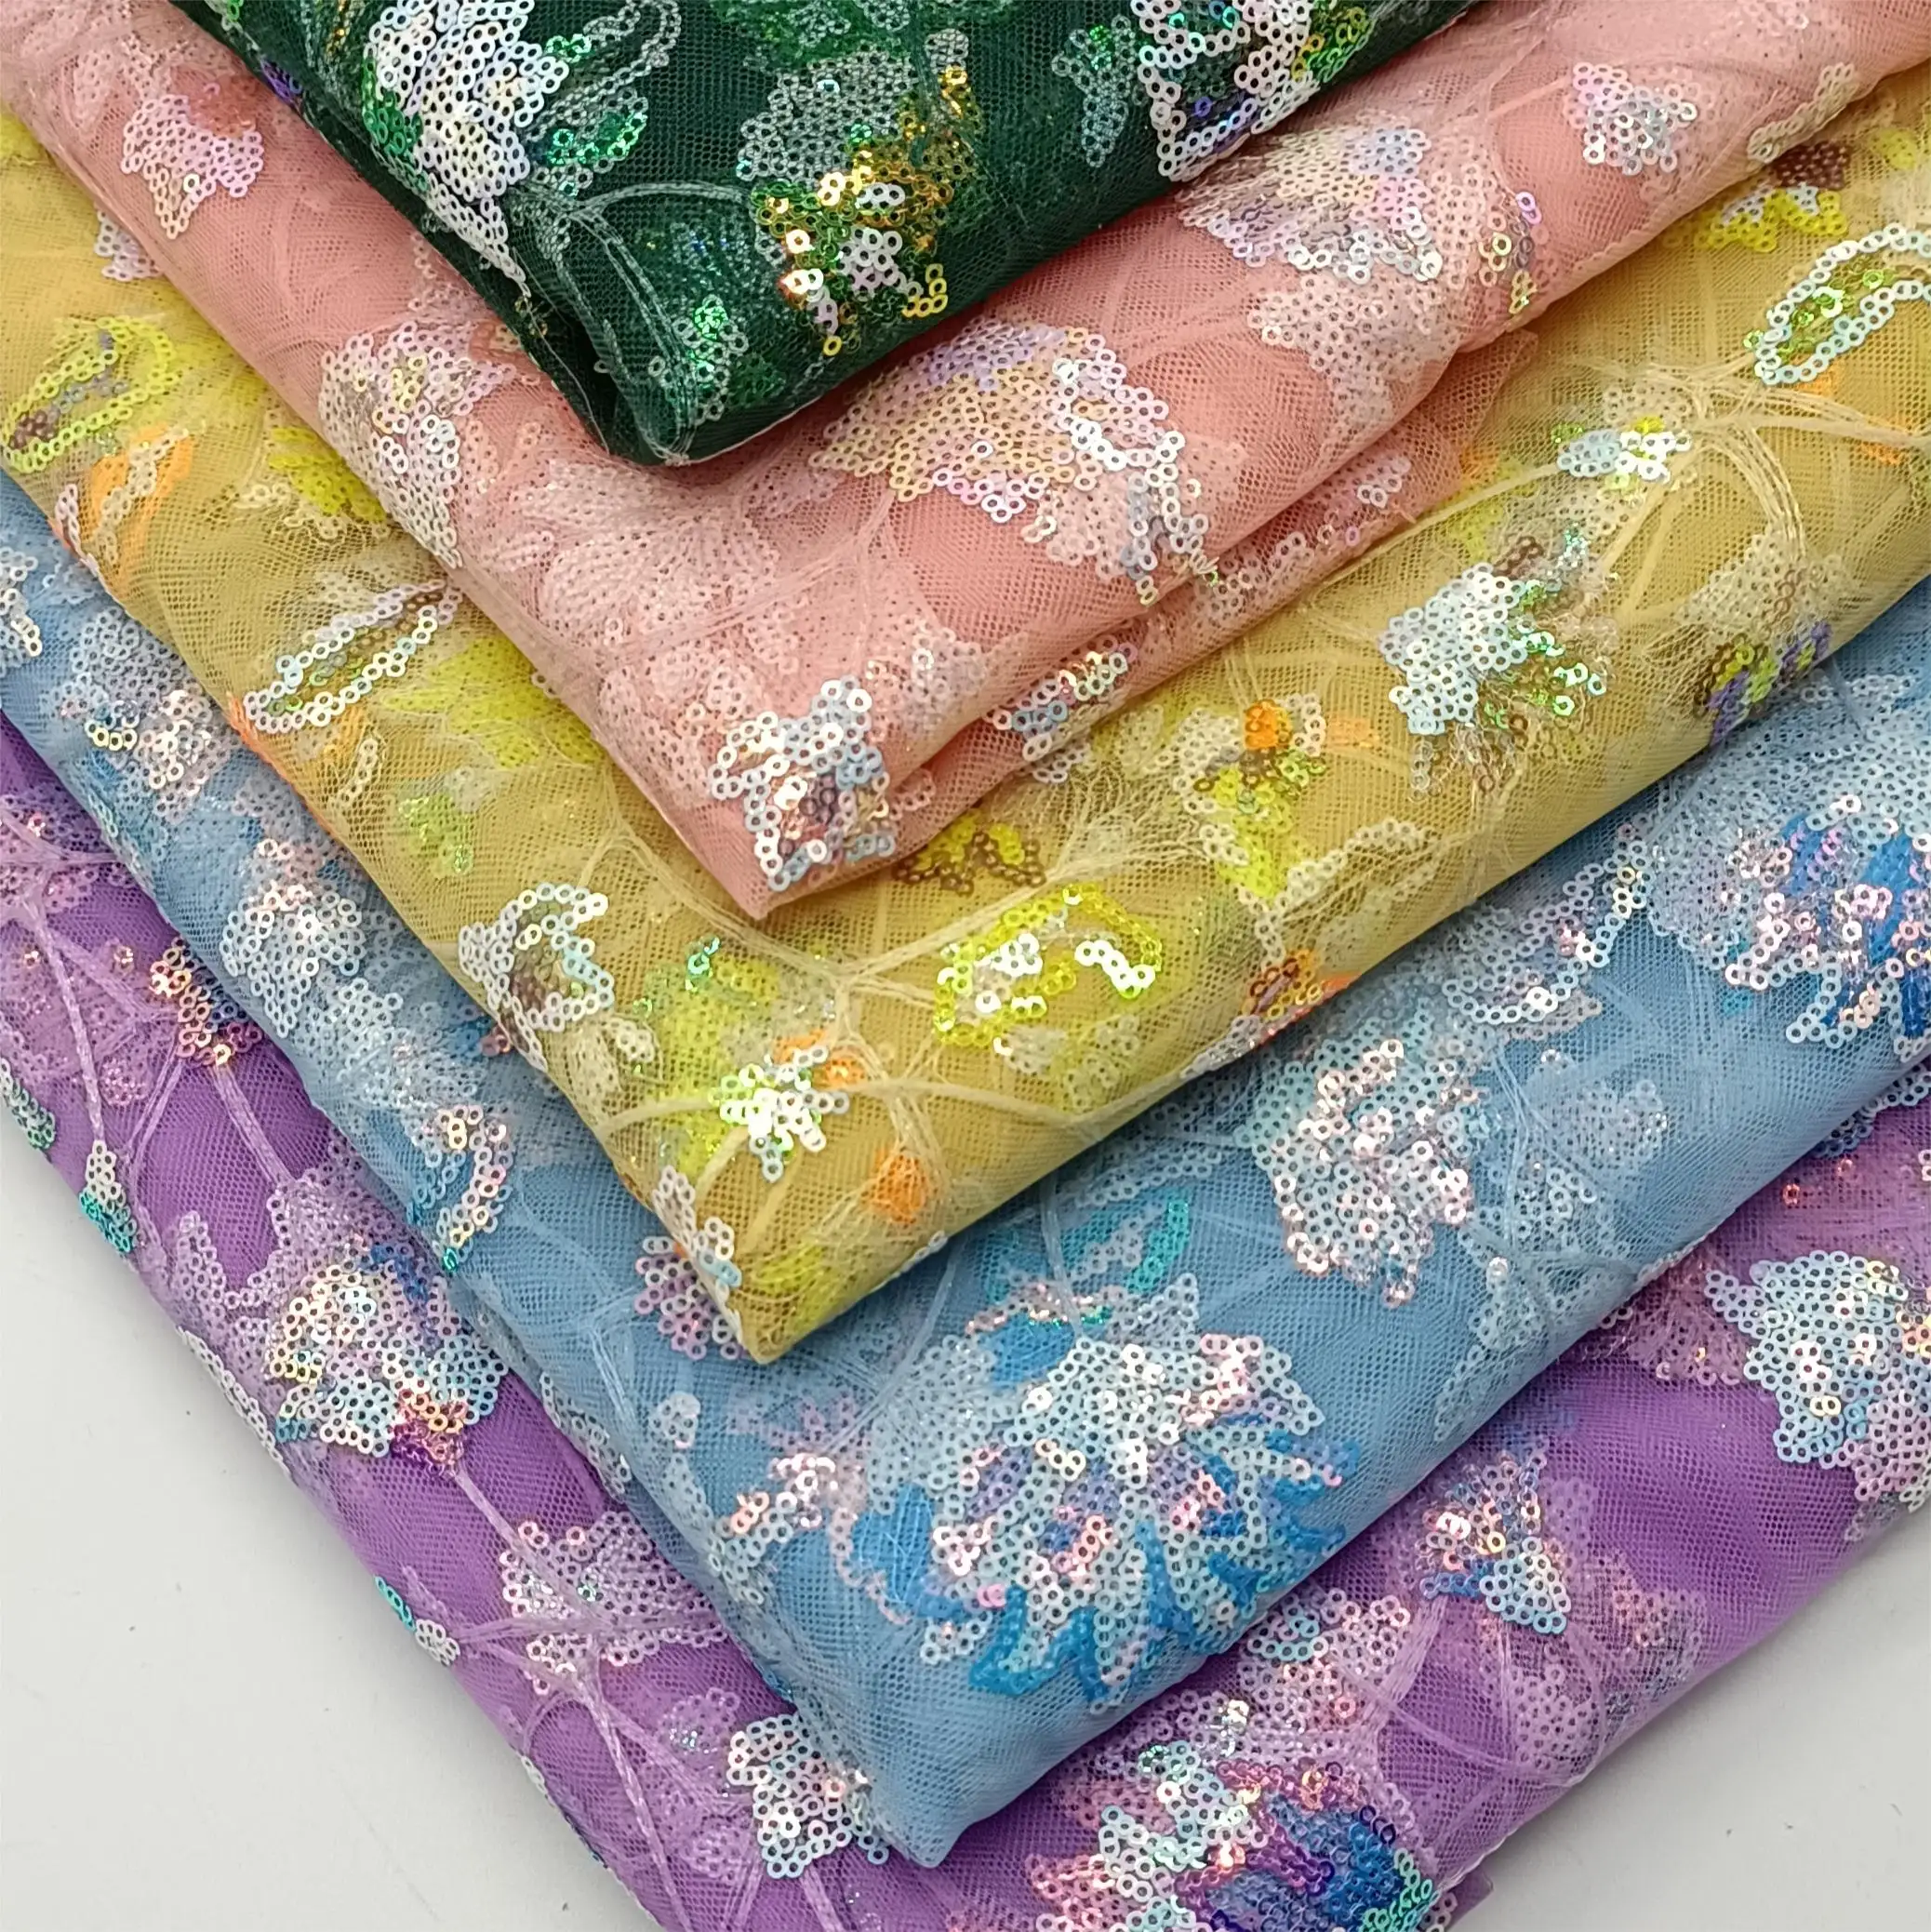 Offres Spéciales et vente directe en usine, nouveau design de tissu de tulle brodé de paillettes pour robe